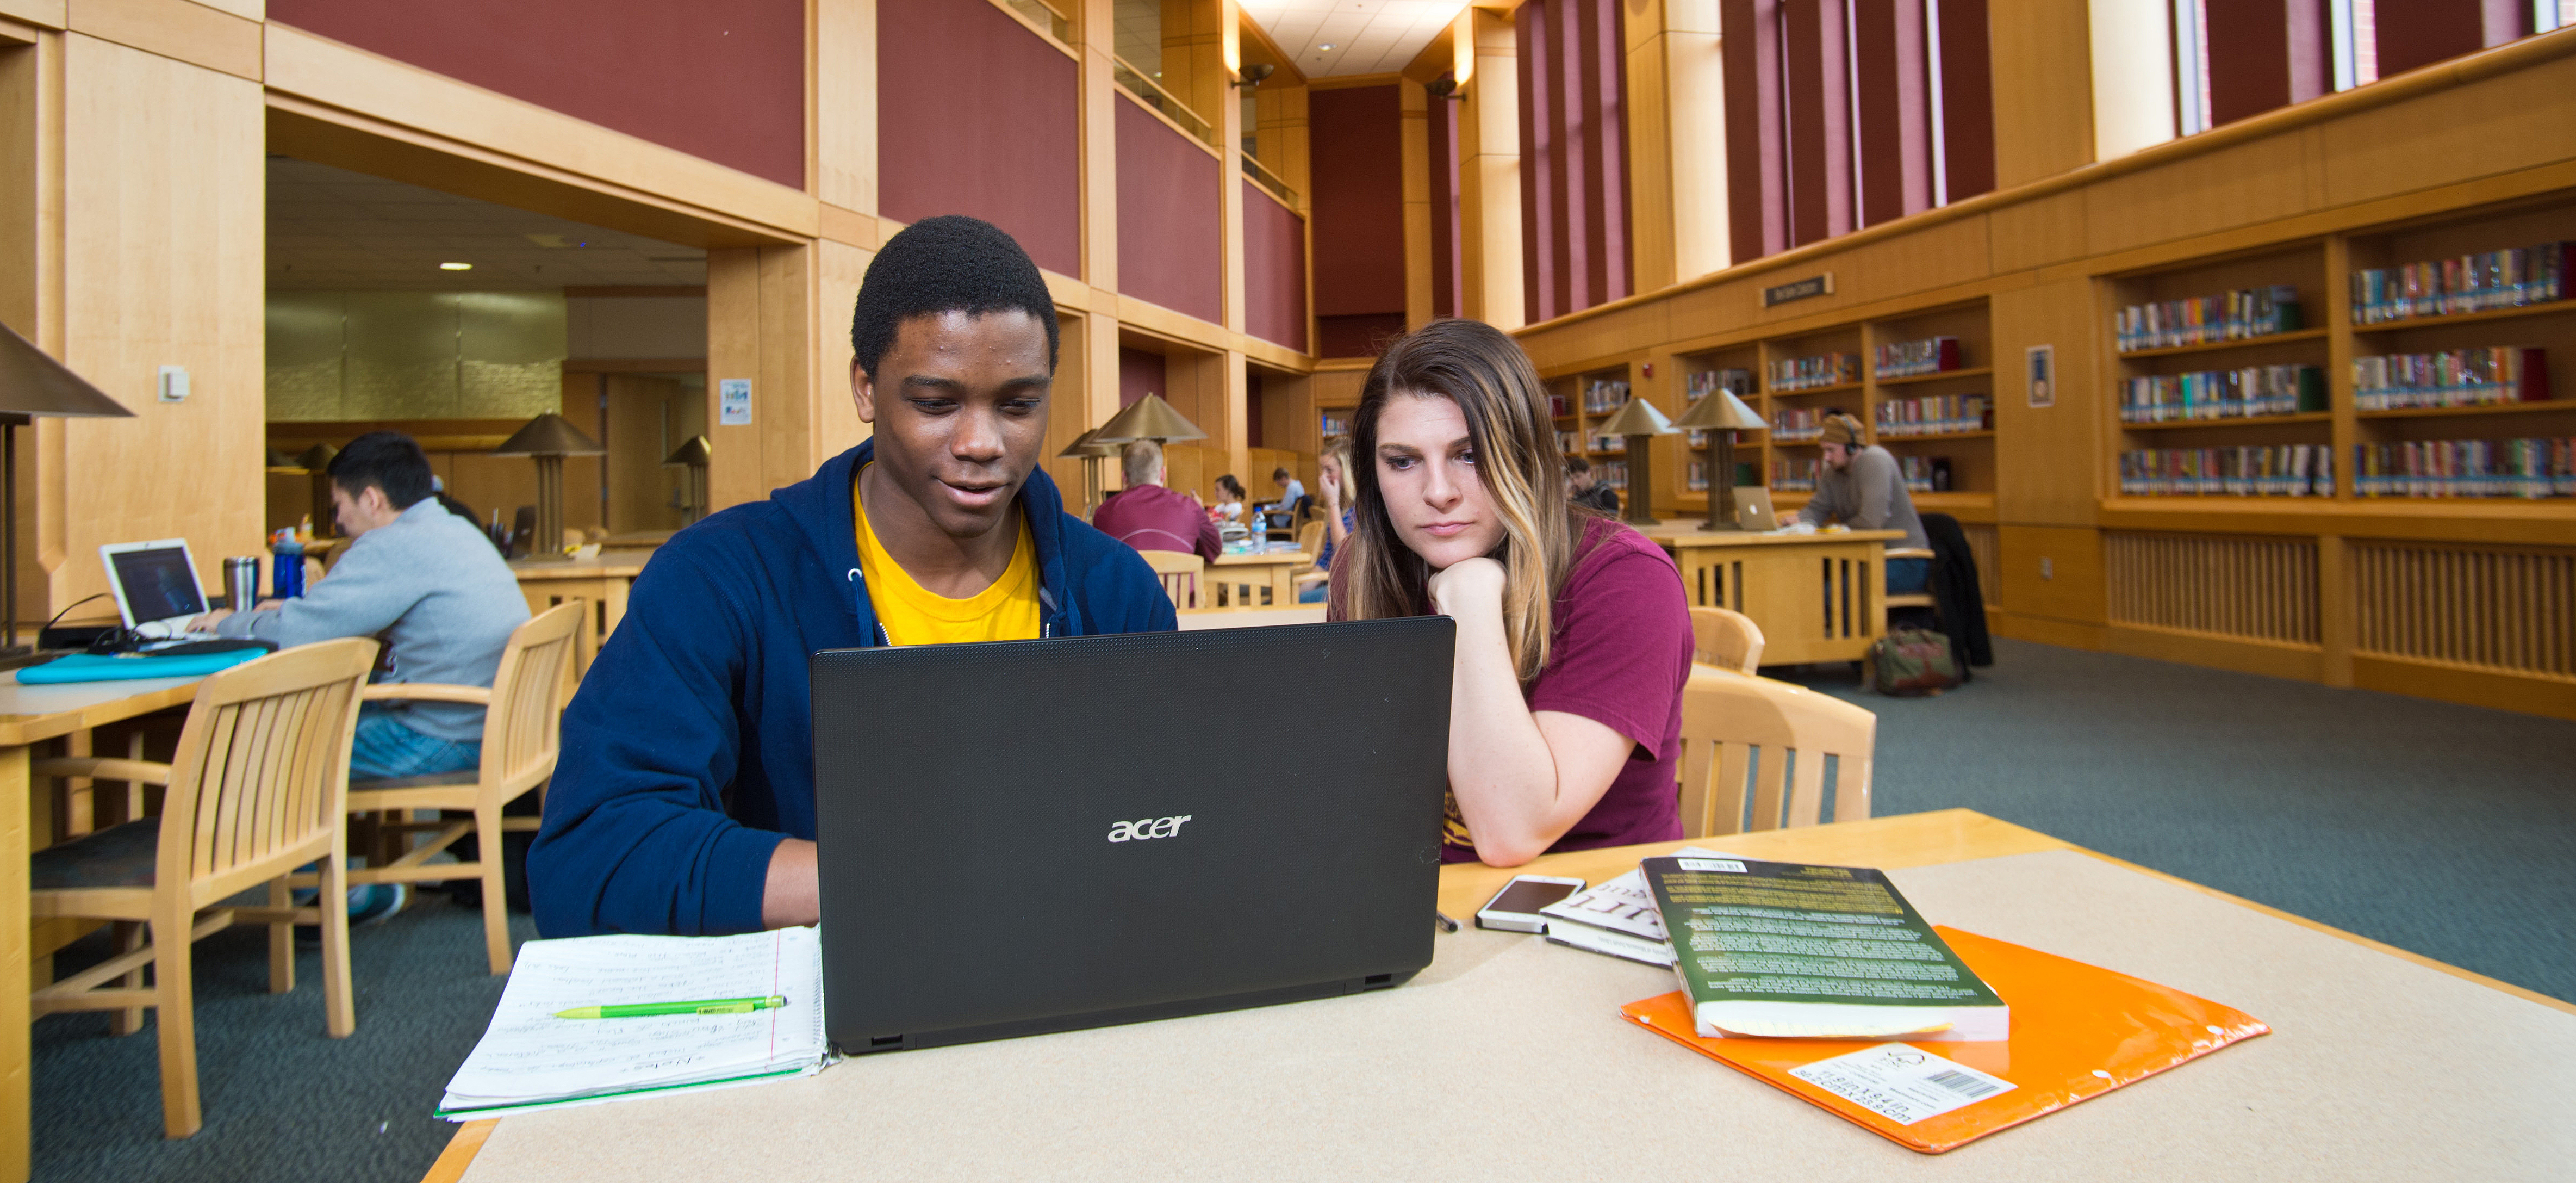 Students Looking at Computer